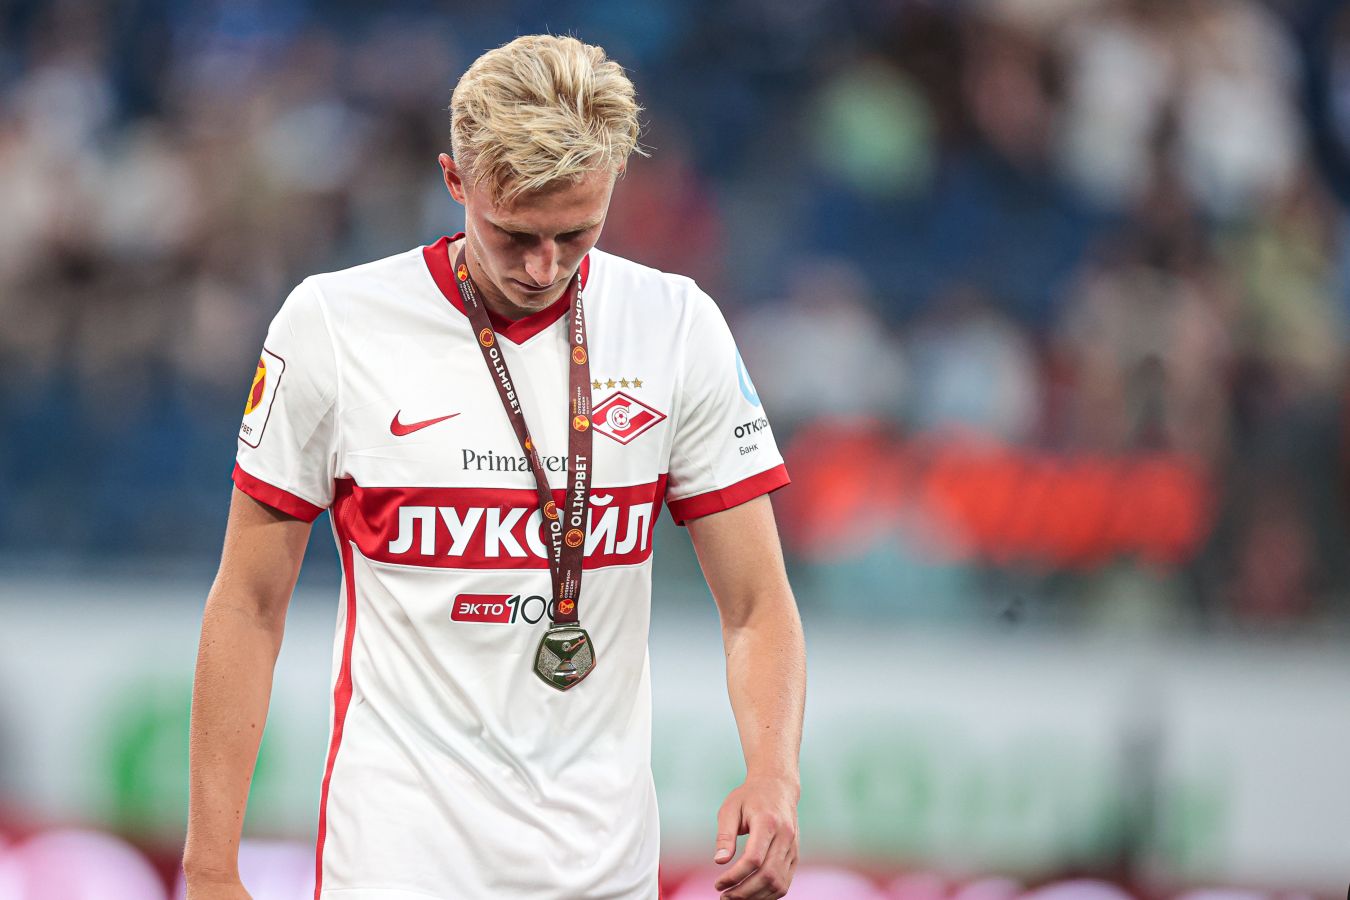 Игрок «Спартака» Литвинов заявил, что никогда не перейдёт в «Зенит» или ЦСКА